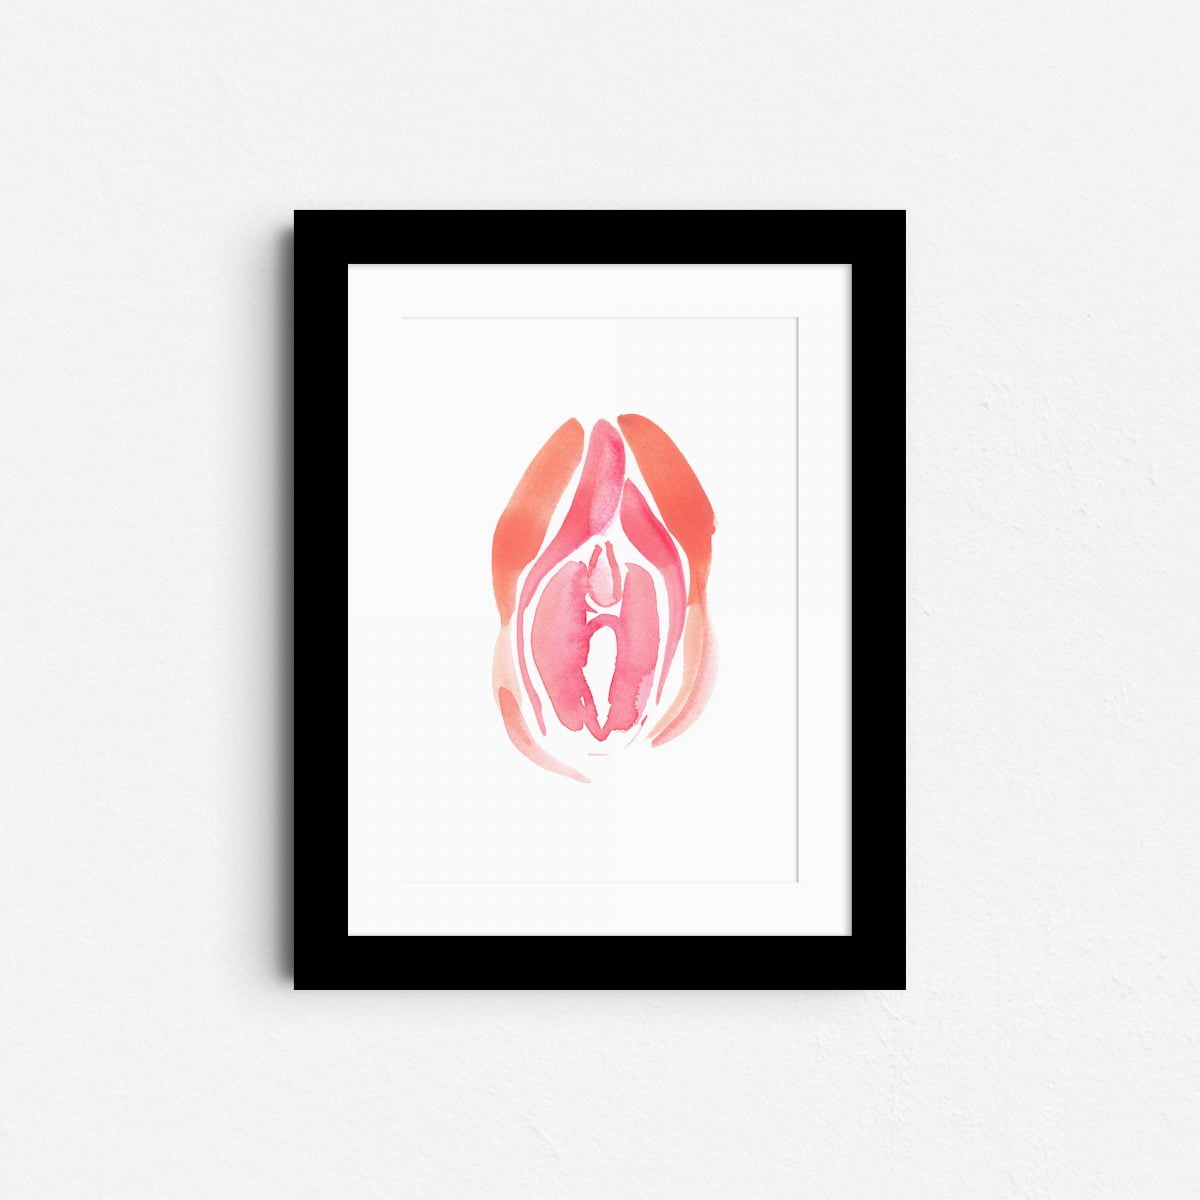 vida-a4-nude-erotic-wall-art-framed